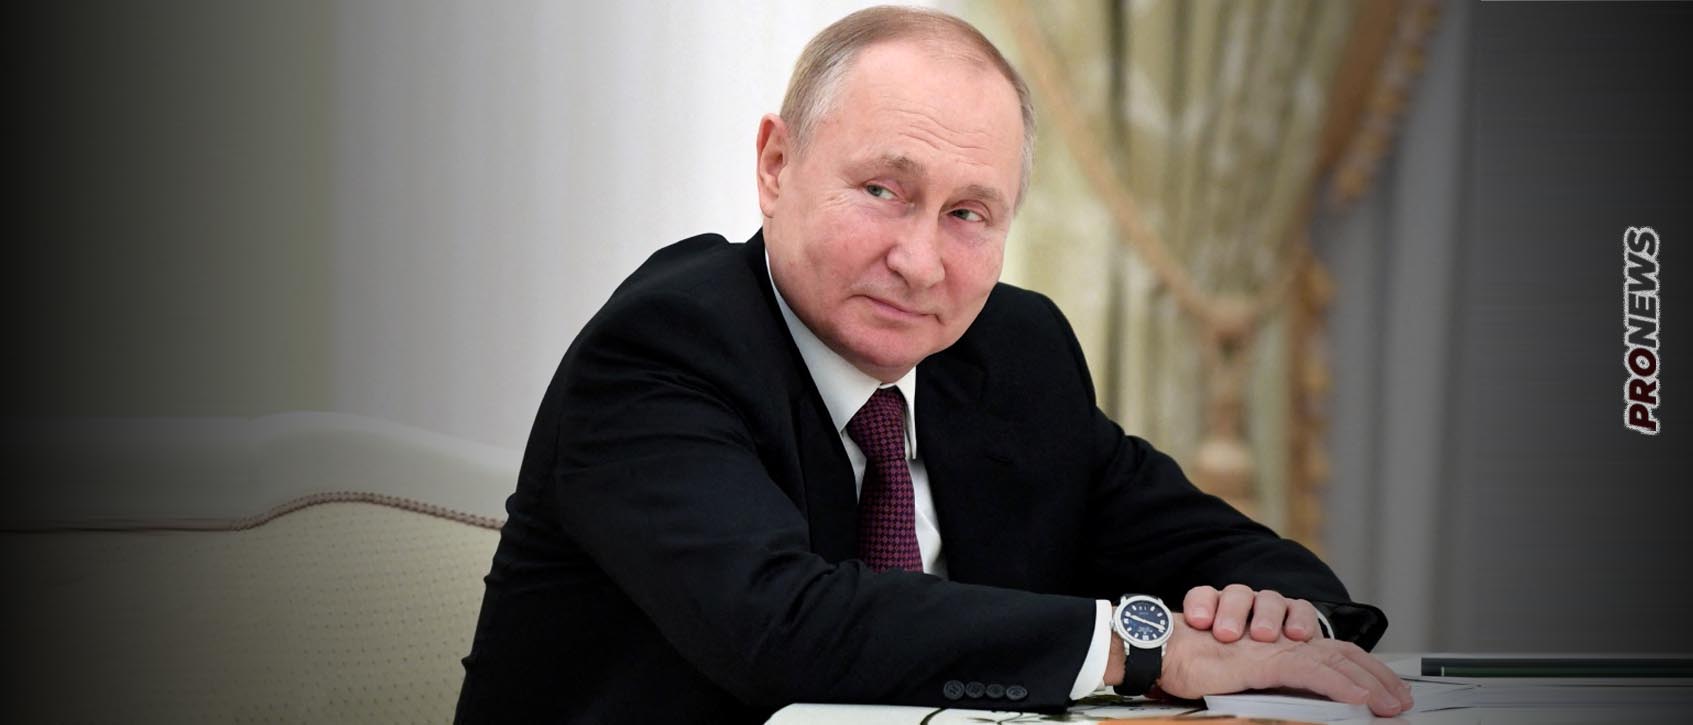 Η εμπόλεμη Ρωσία στις κορυφαίες οικονομίες του κόσμου για πρώτη φορά μετά το 2014 – Oι κυρώσεις της Δύσης έκαναν πιο δυνατό τον Β.Πούτιν